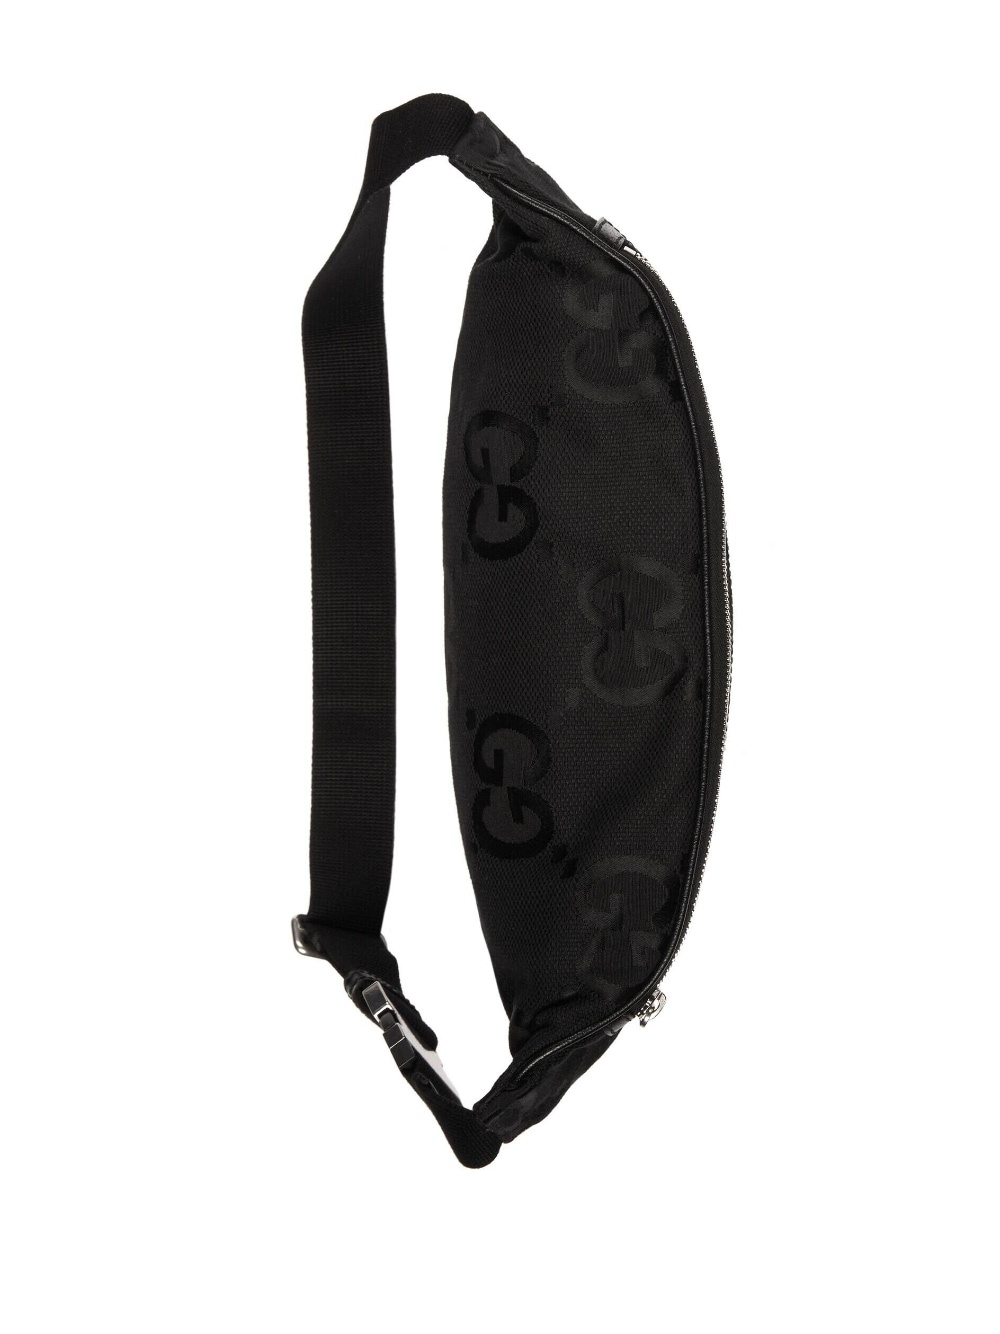 Jumbo GG belt bag - 5